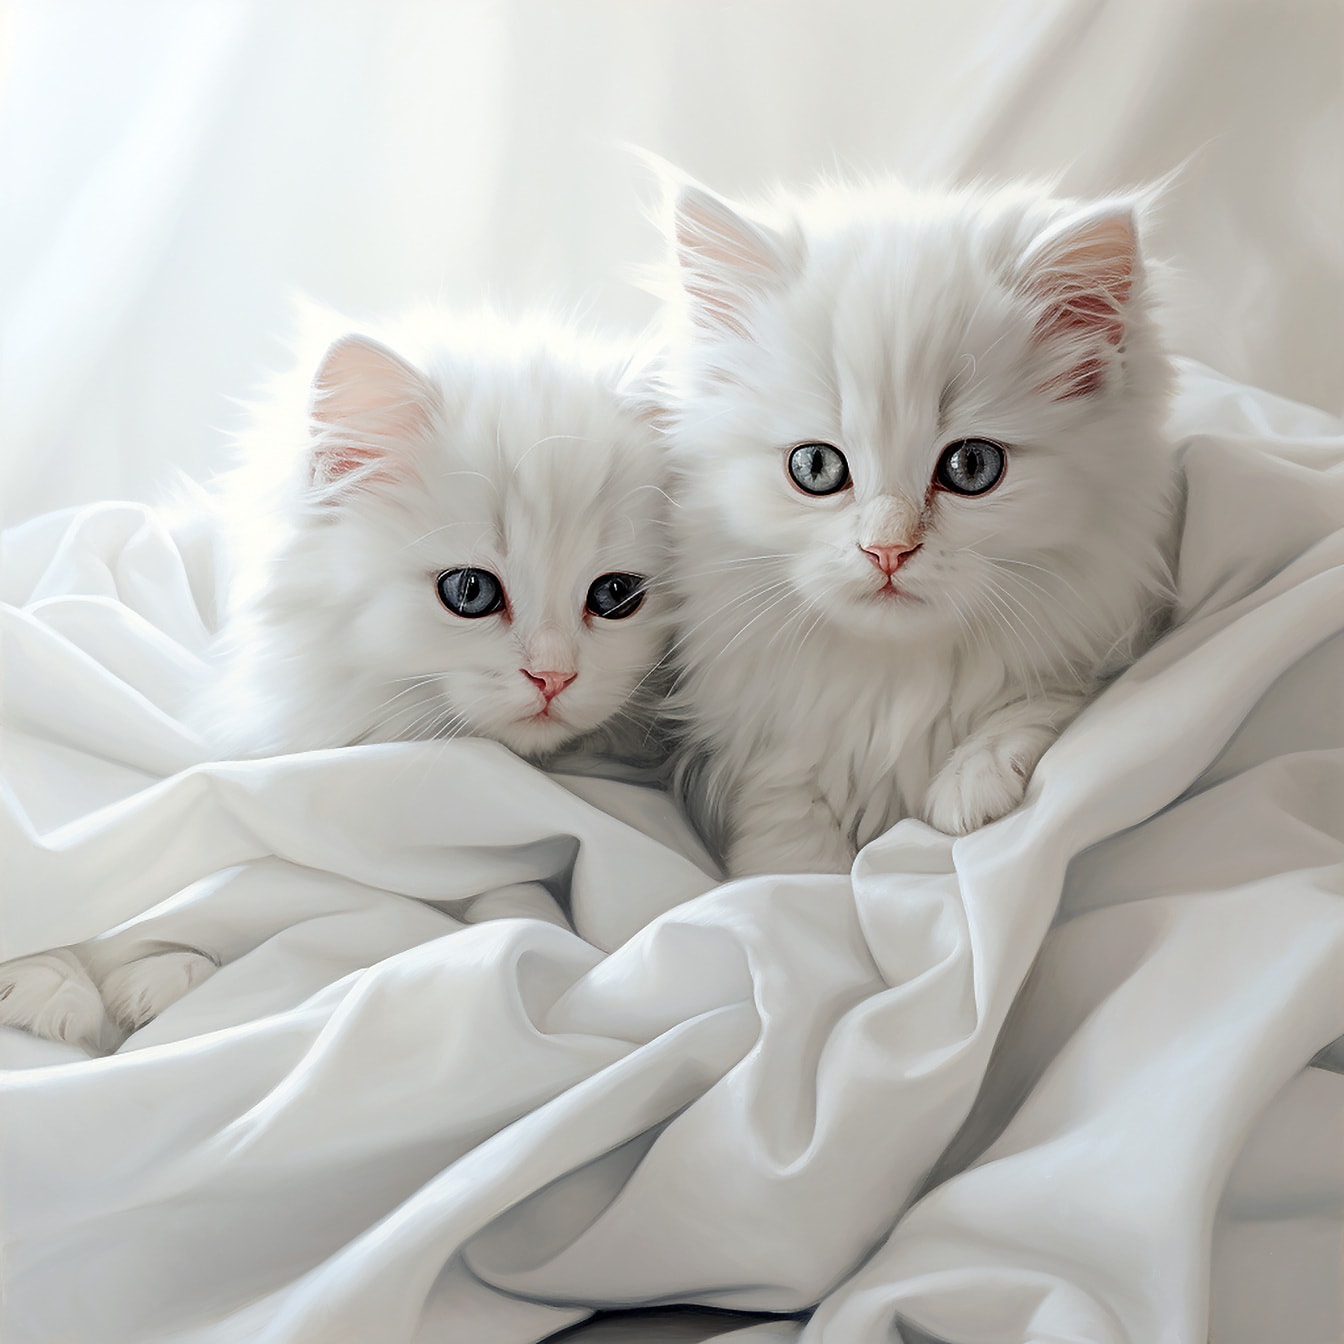 Urocze futrzane kocięta w fotografii studyjnej z białego jedwabiu na płótnie